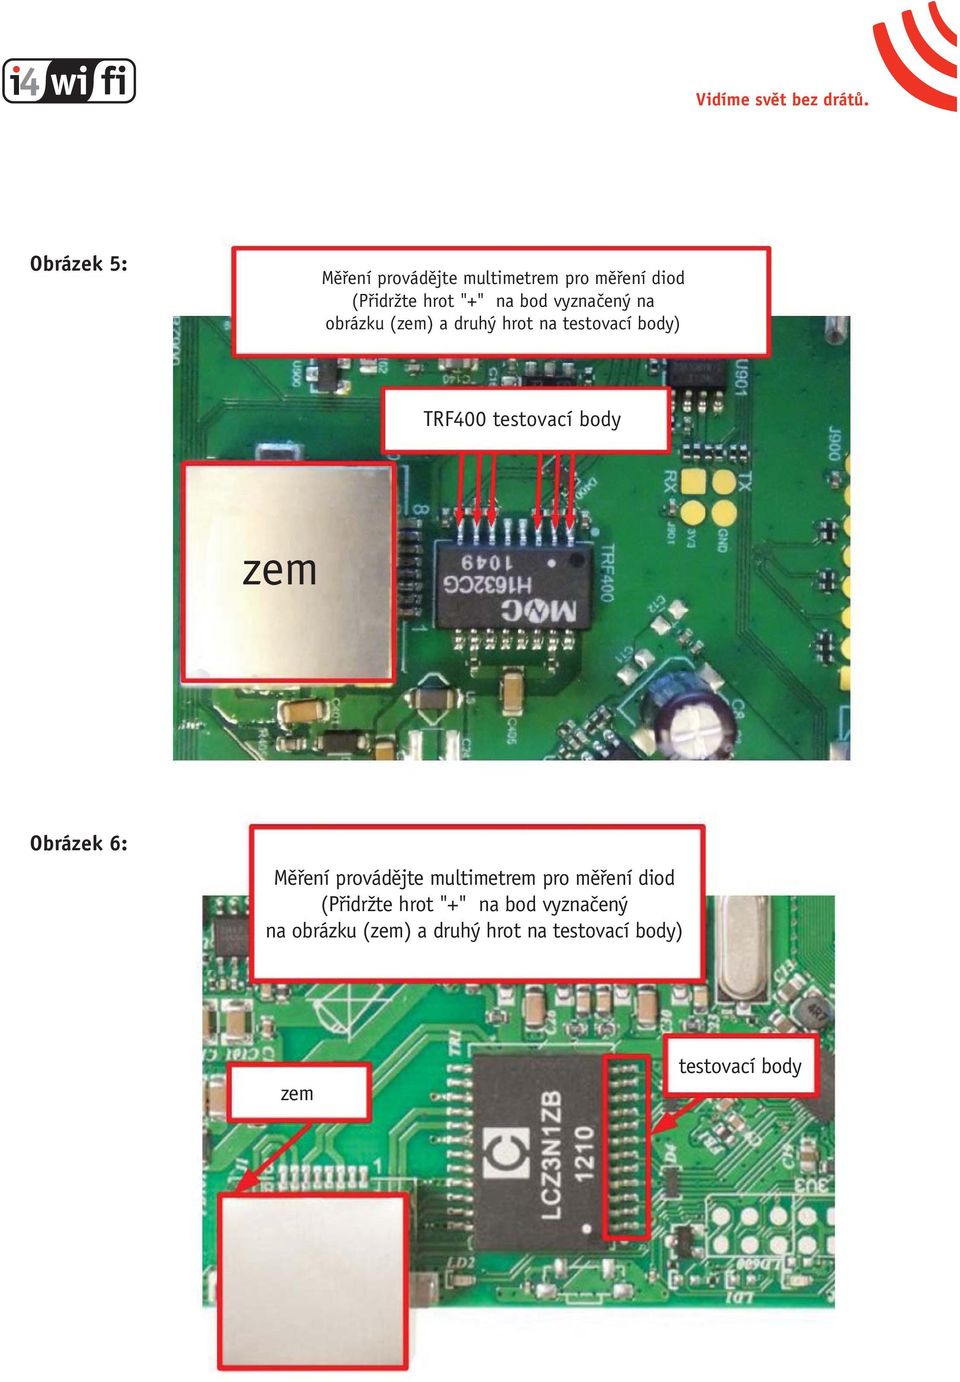 body Obrázek 6: Měření provádějte multimetrem pro měření diod (Přidržte hrot